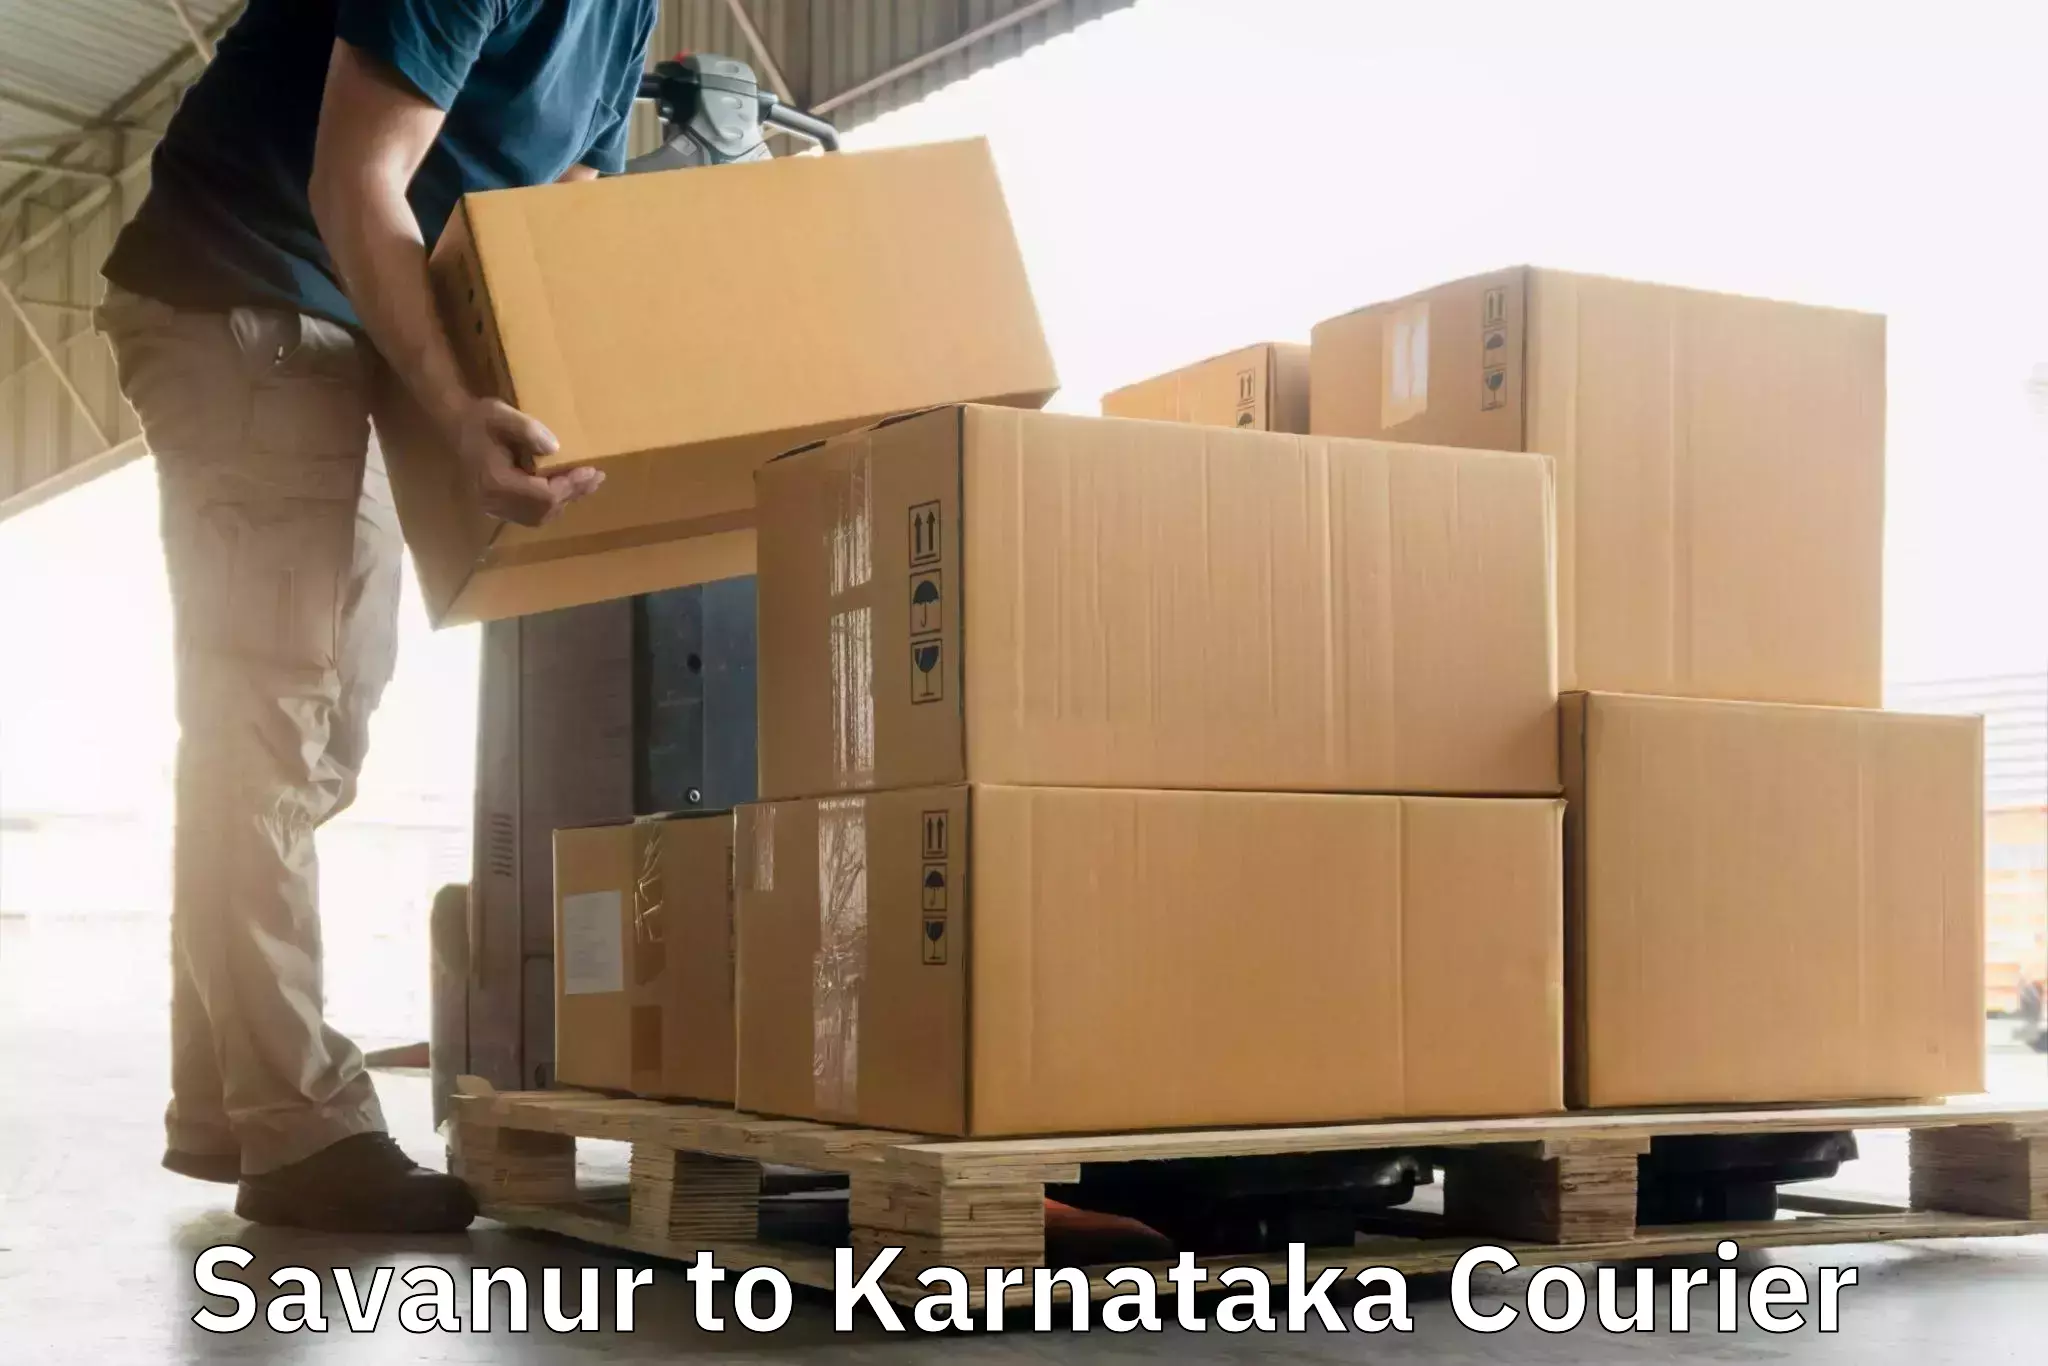 On-call courier service Savanur to Jayanagar